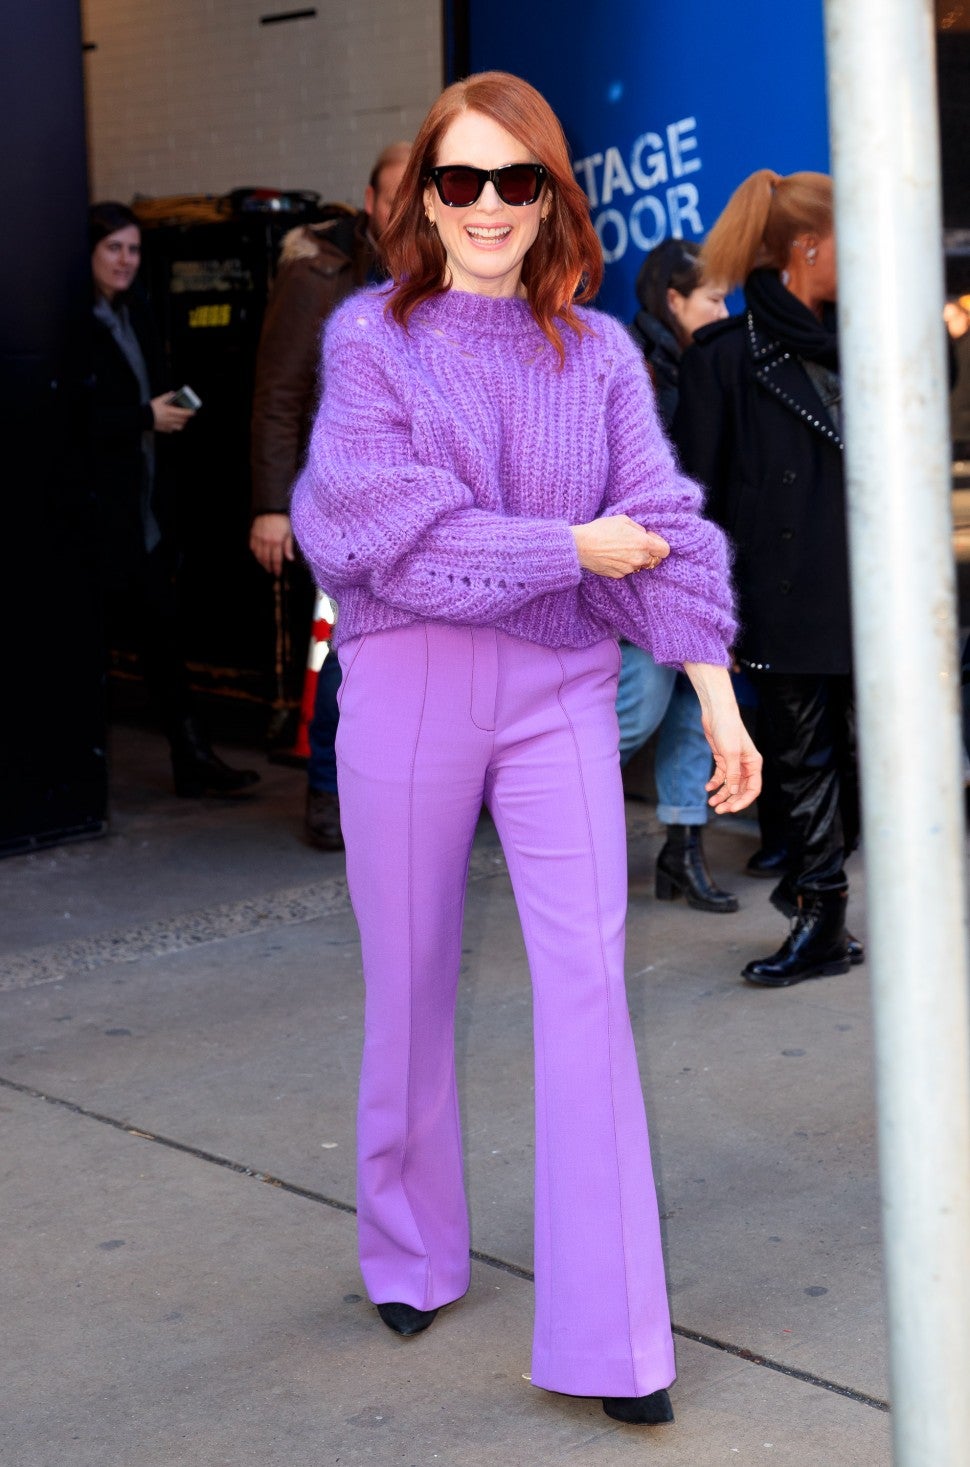 Julianne Moore in monochrome purple outfit